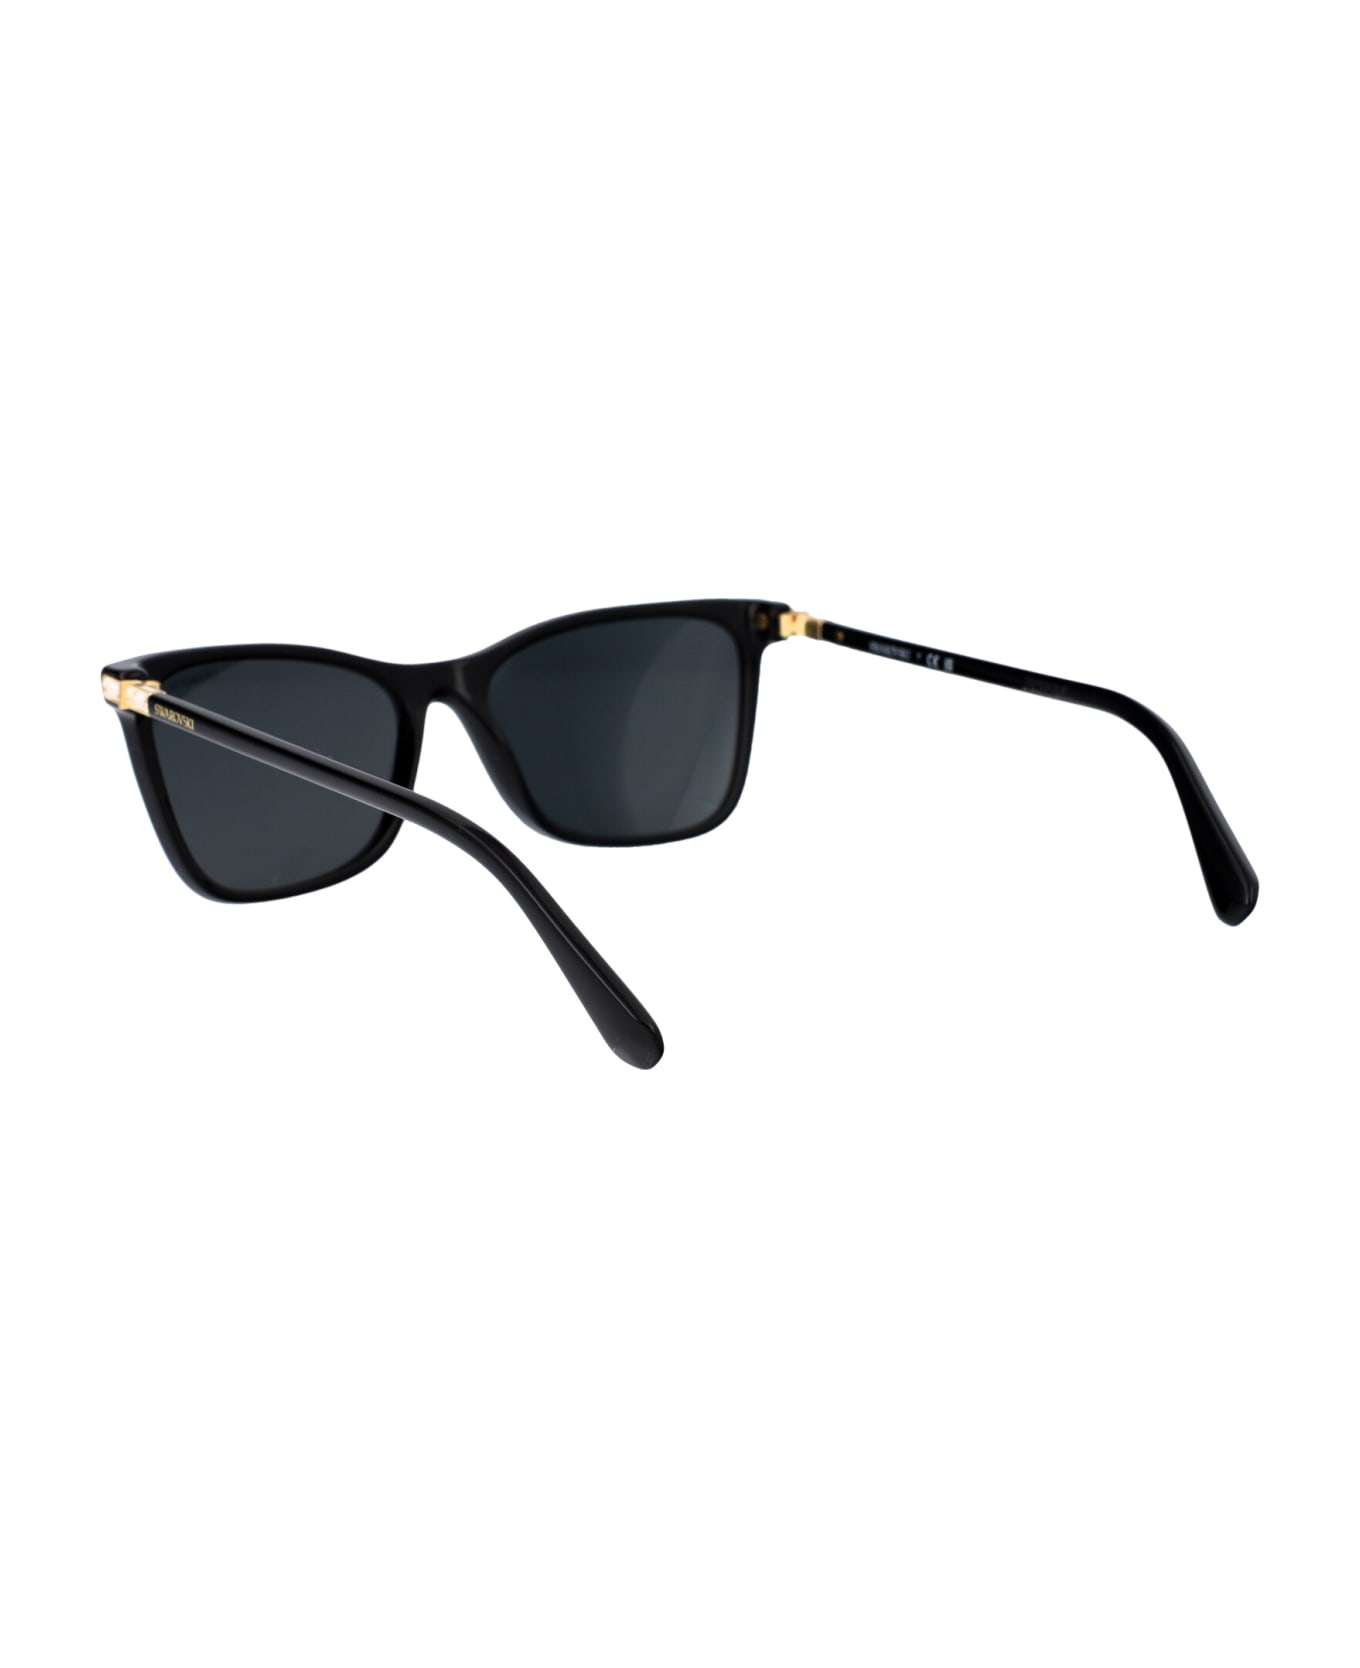 Swarovski 0sk6004 Sunglasses - 100187 BLACK